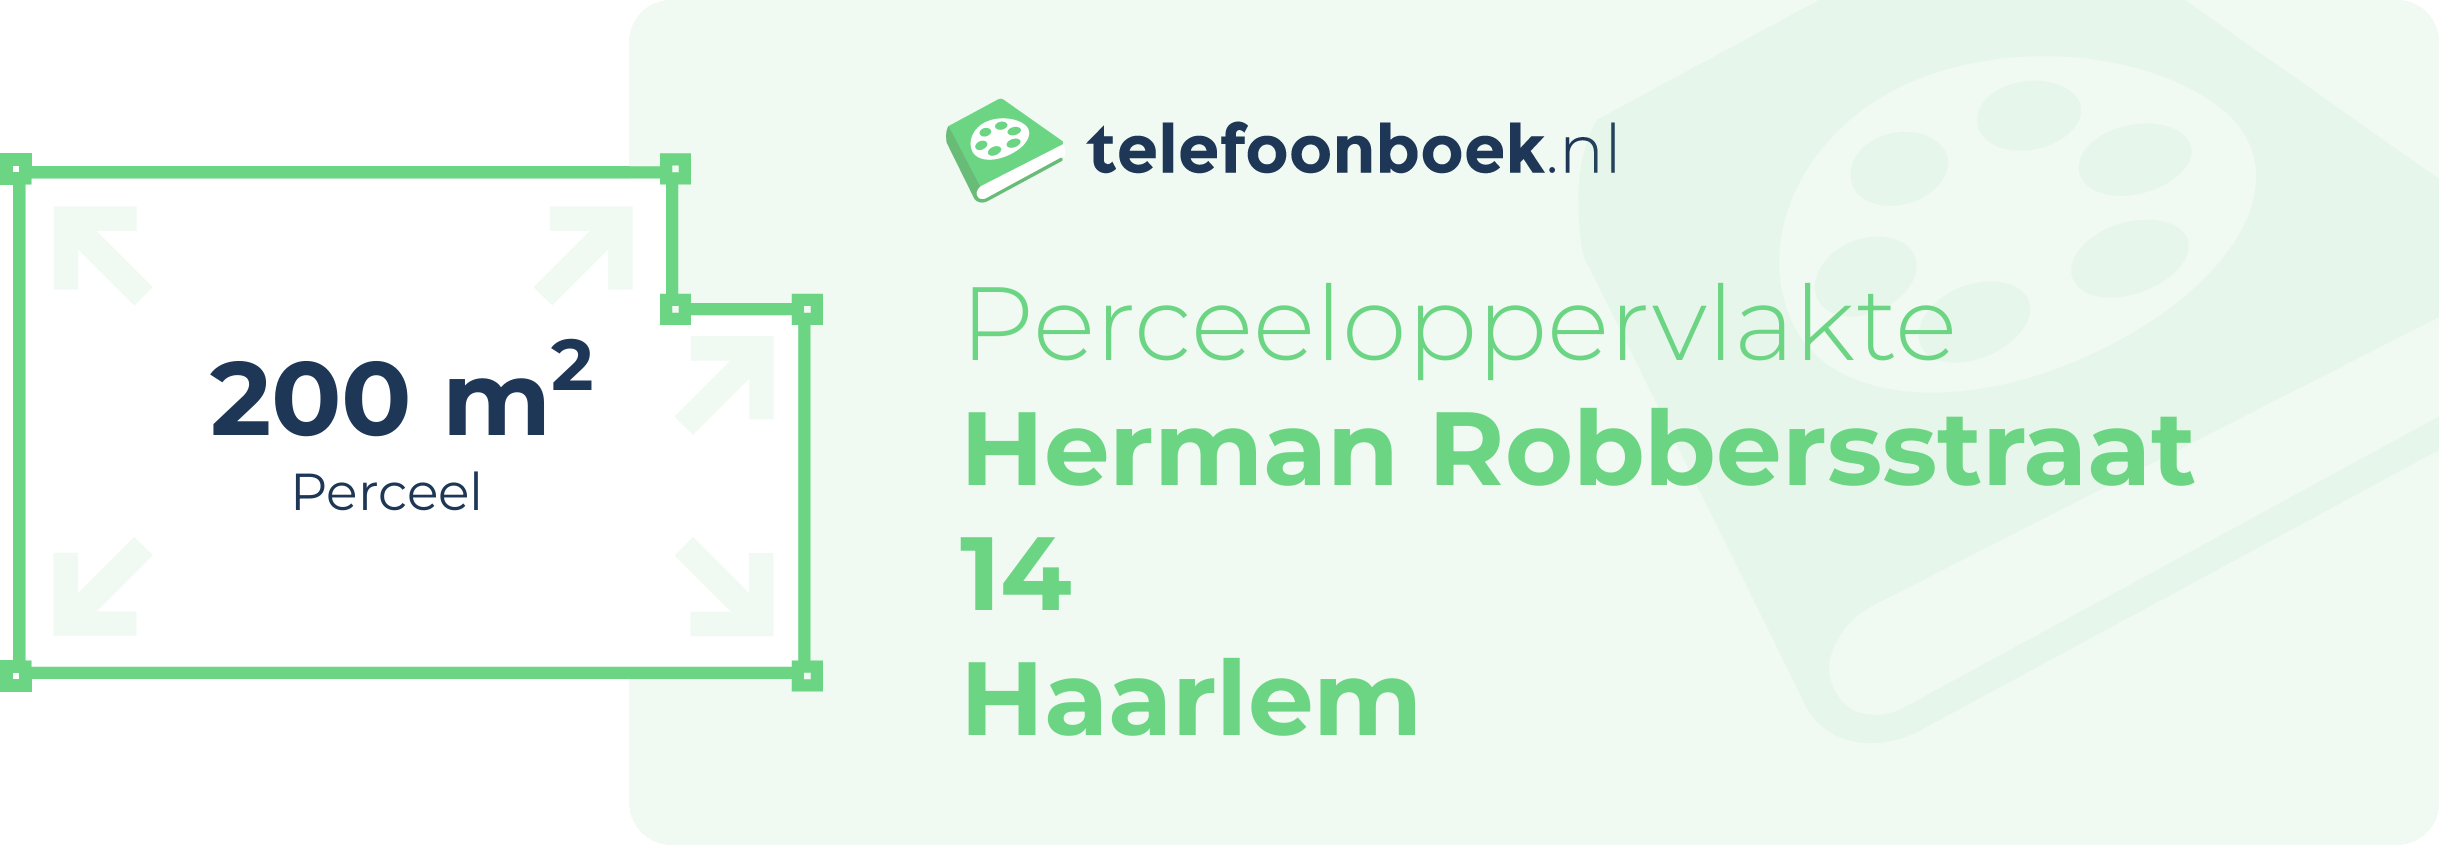 Perceeloppervlakte Herman Robbersstraat 14 Haarlem